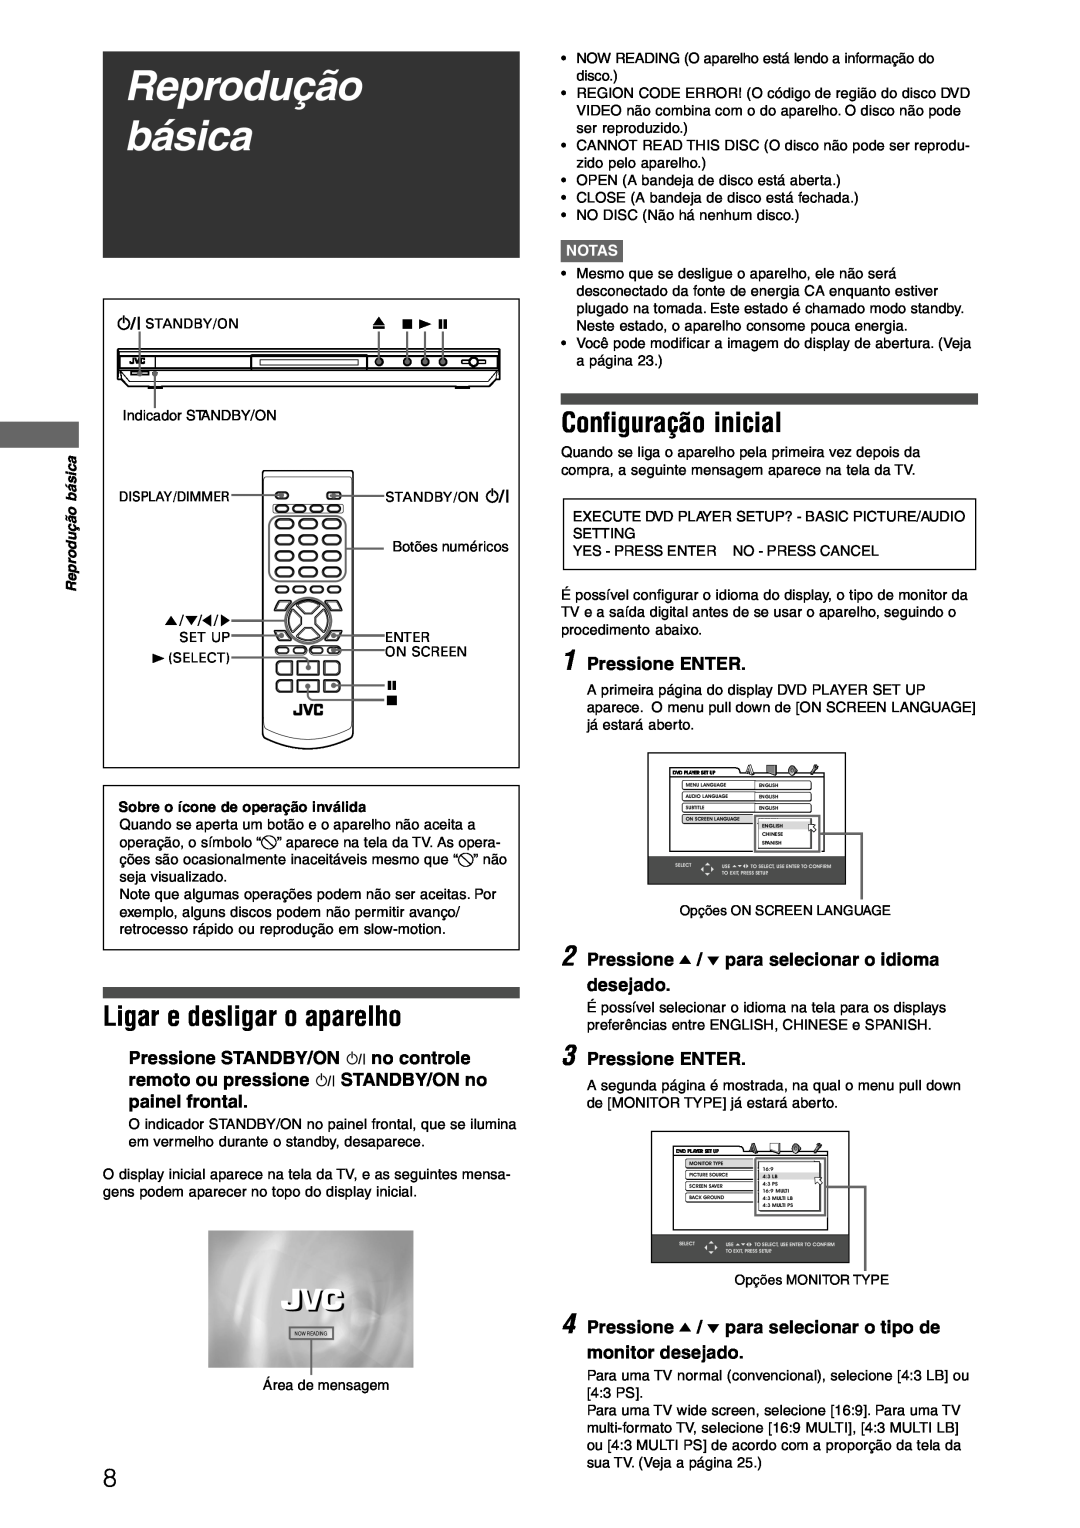 JVC XV-N312SUW manual Reprodução básica, Ligar e desligar o aparelho, Configuração inicial, Notas 